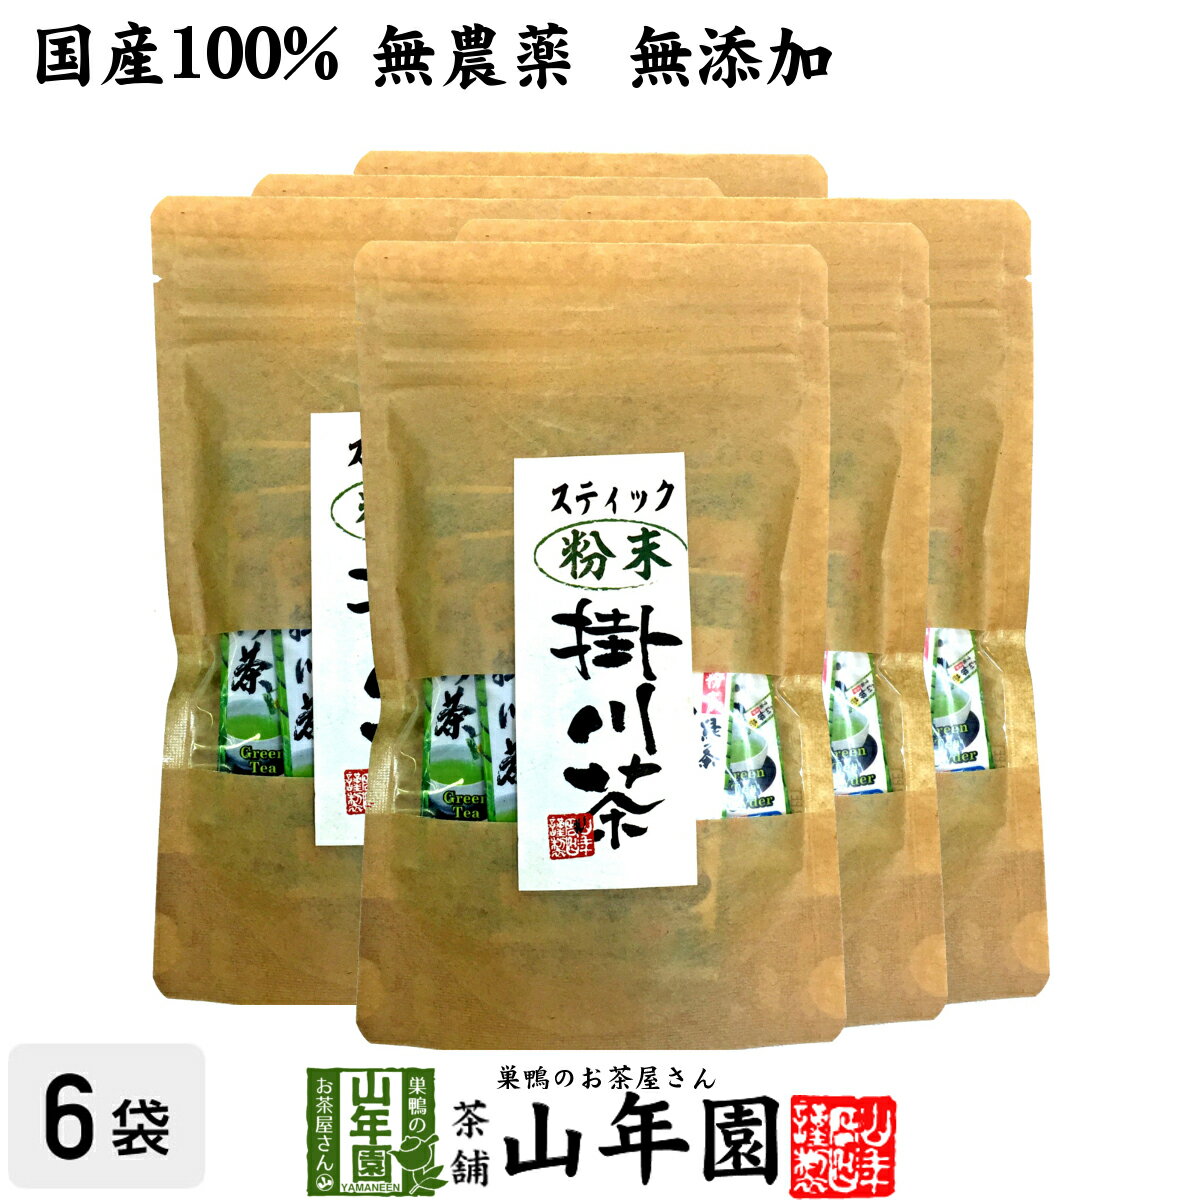 【国産】掛川深蒸し茶 スティックタイプ 粉末 0.8g×15